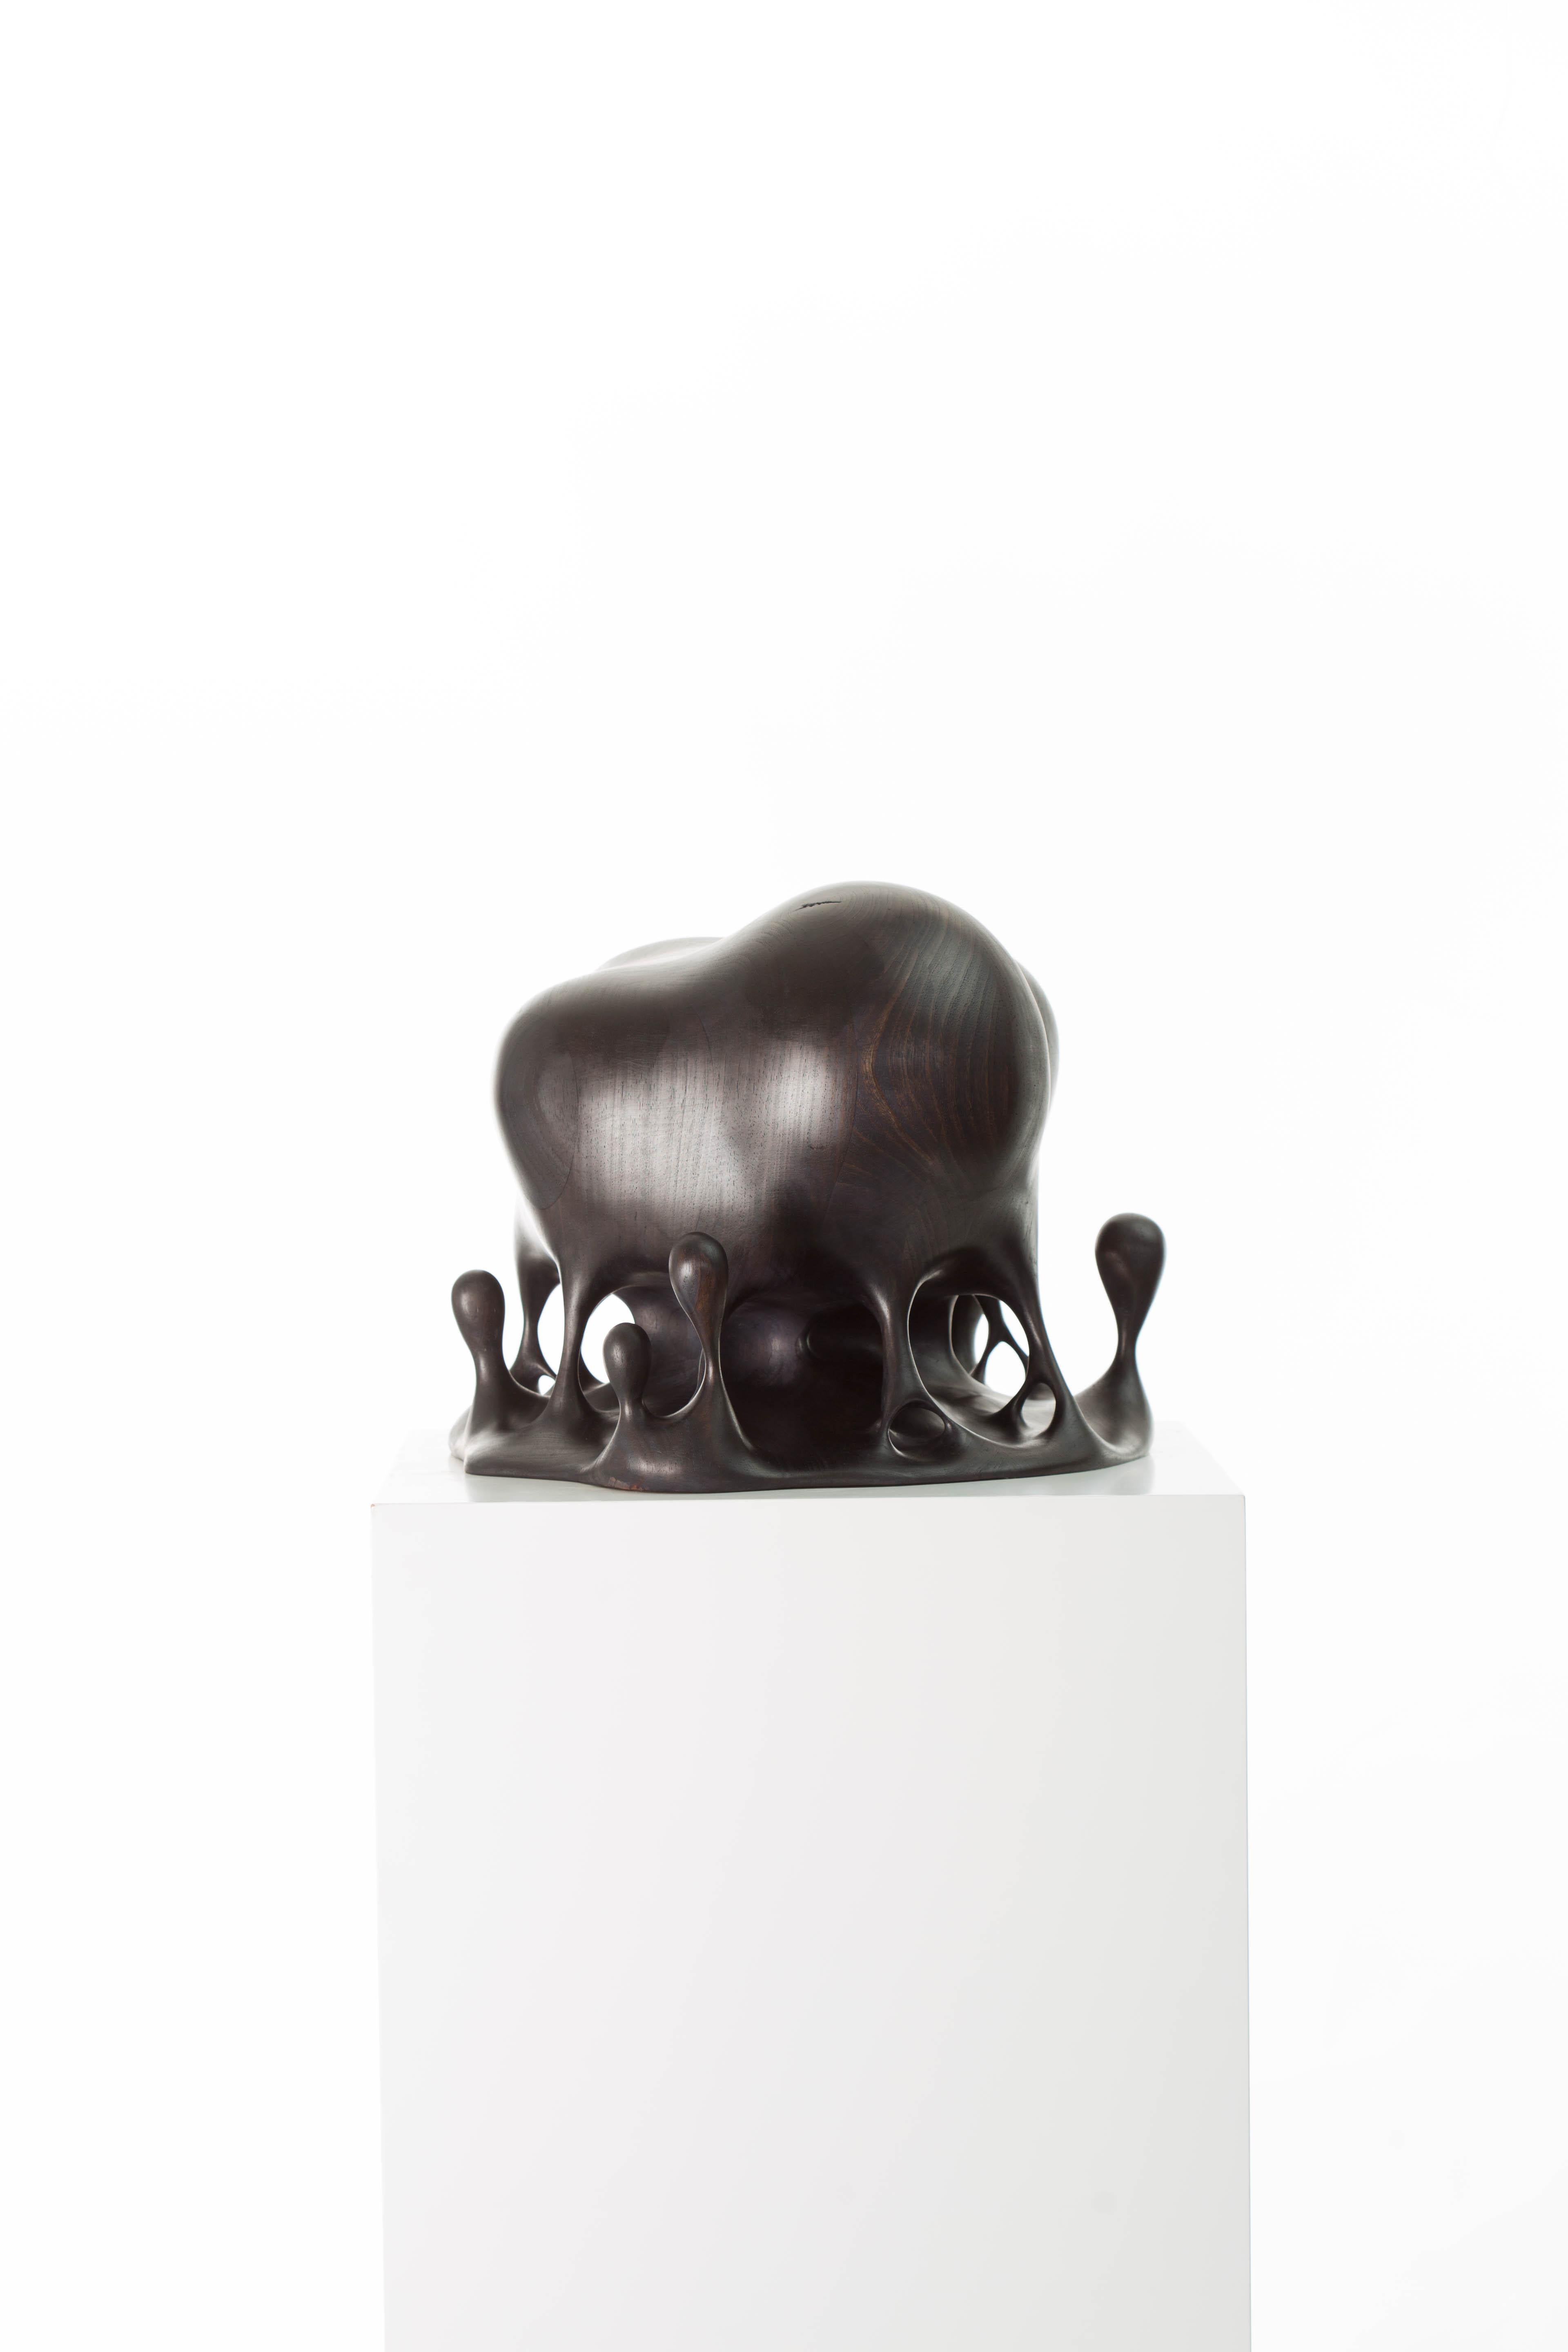 L'amour était-il réel ? sculpture de Driaan Claassen
Édition limitée
Dimensions : D 32 x L 43 x H 36 cm
MATERIAL : Bois : Kiaat
Poids : 7.5 kg

Né à Johannesburg en 1991, le sculpteur Driaan Claassen a d'abord étudié l'animation 3D avant de faire